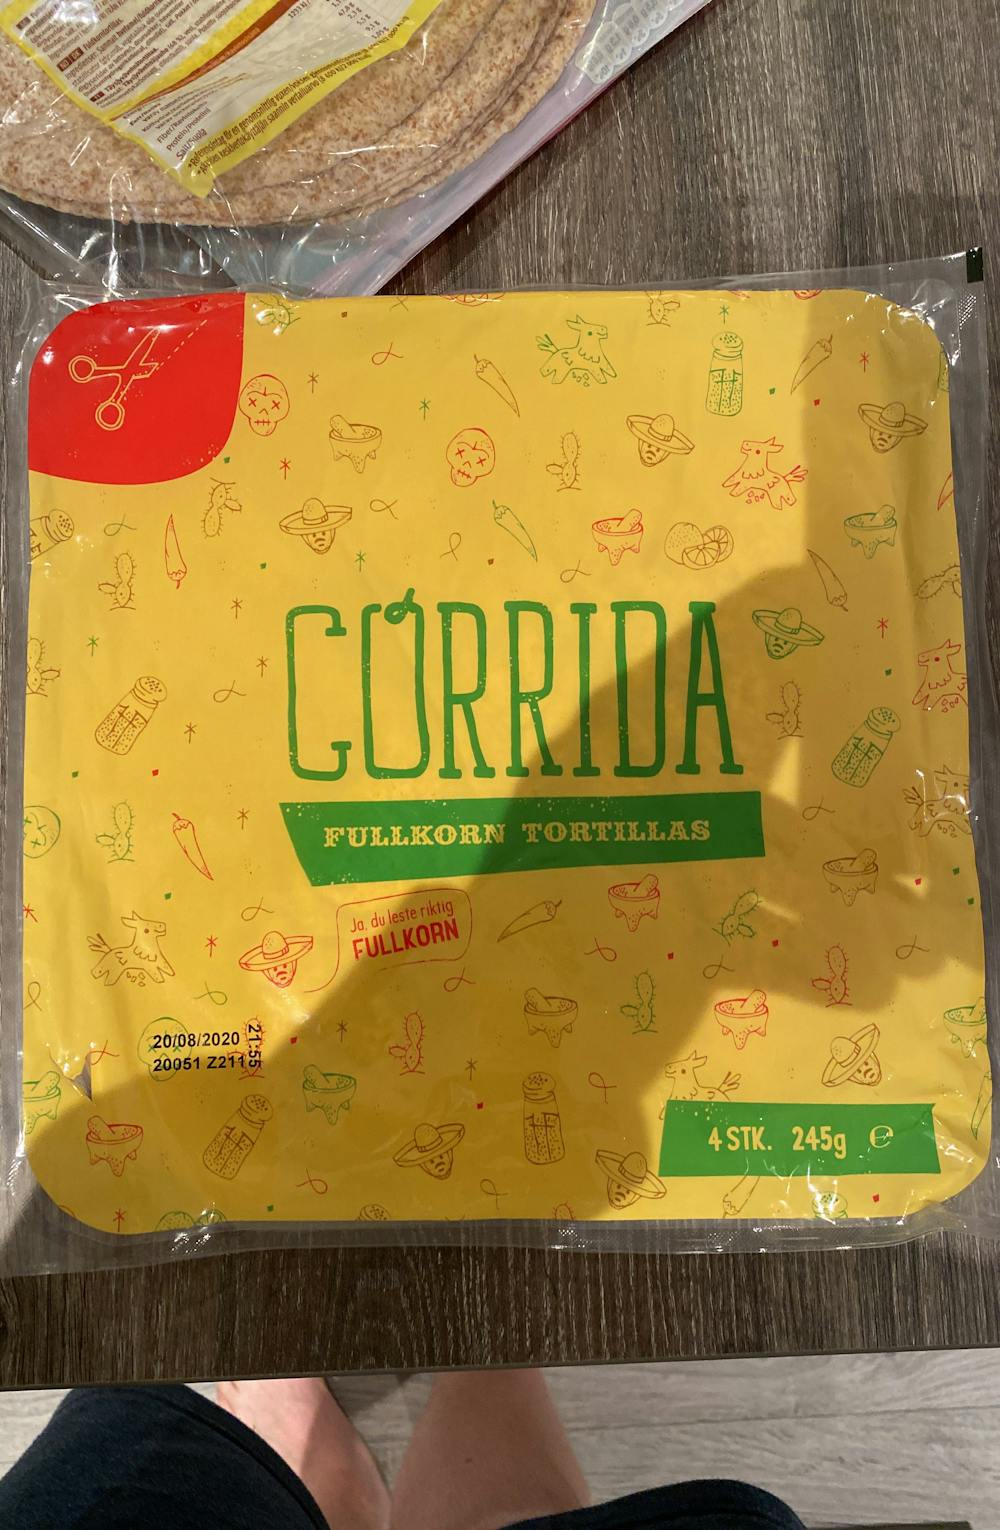 Fullkorn tortillas, Gorrida